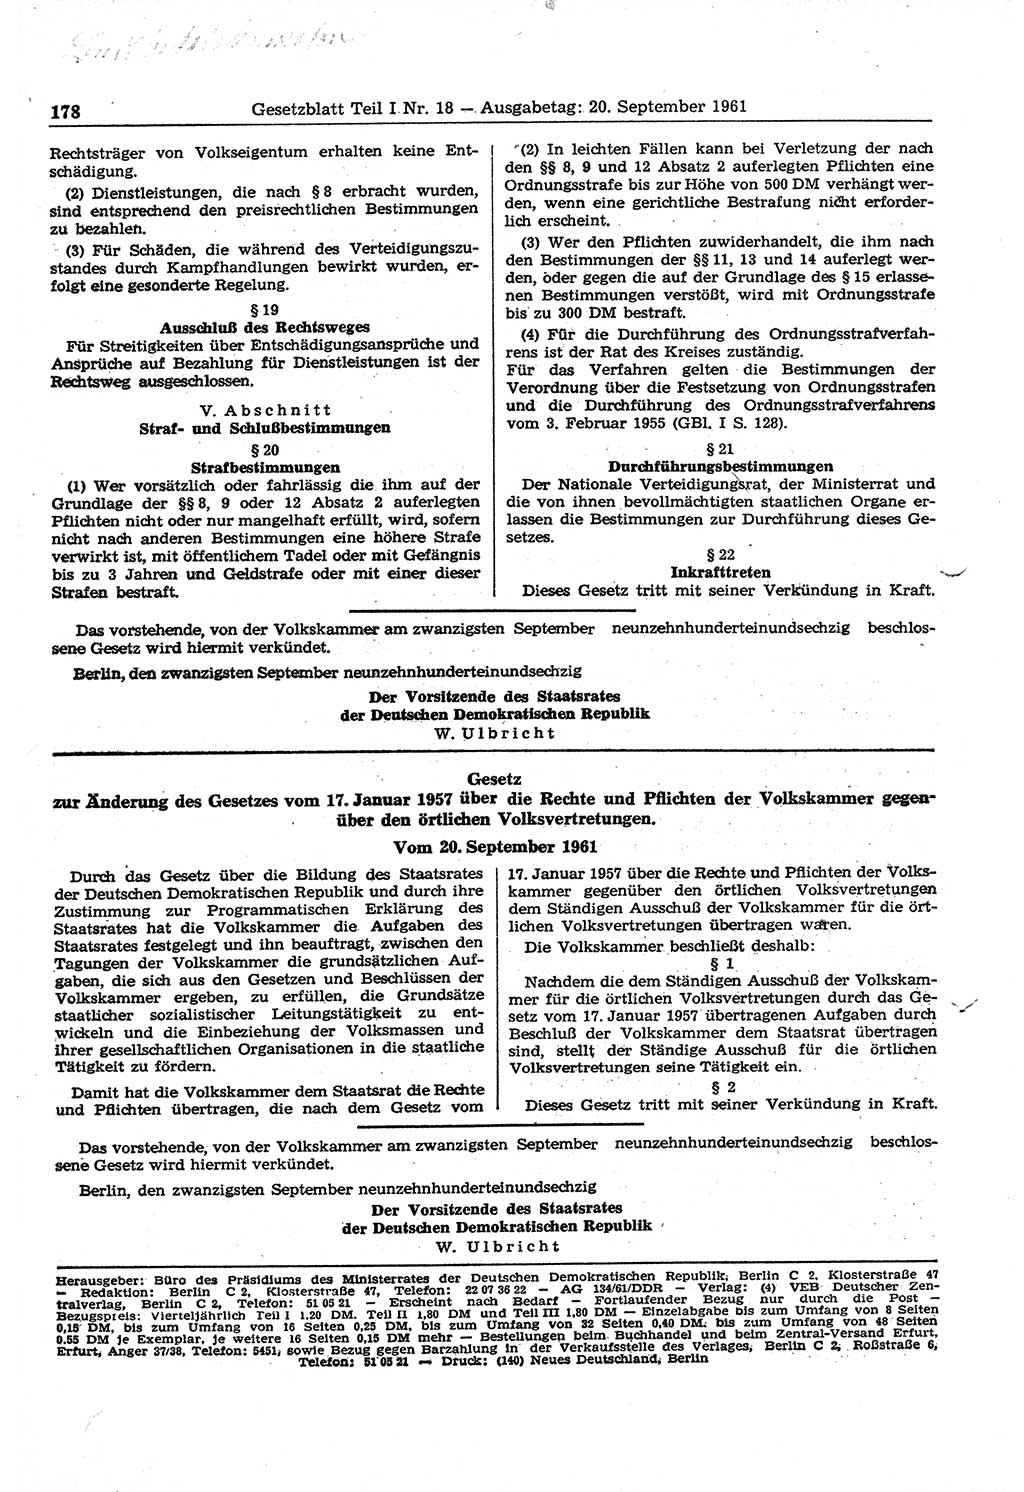 Gesetzblatt (GBl.) der Deutschen Demokratischen Republik (DDR) Teil Ⅰ 1961, Seite 178 (GBl. DDR Ⅰ 1961, S. 178)